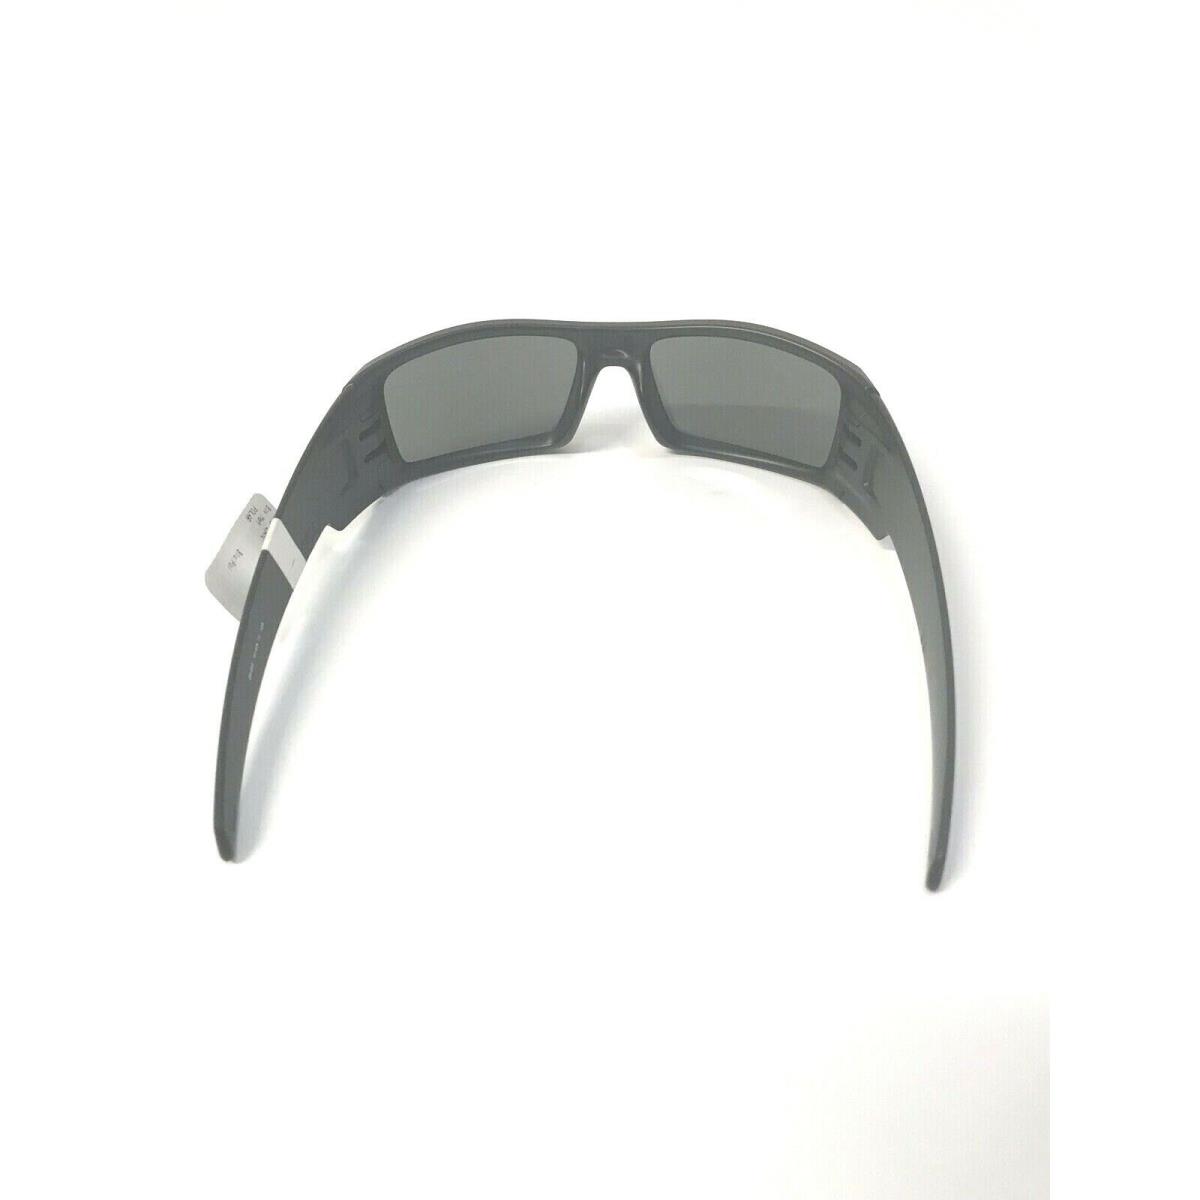 Oakley sunglasses Gascan - Black Frame, Gray Lens 9